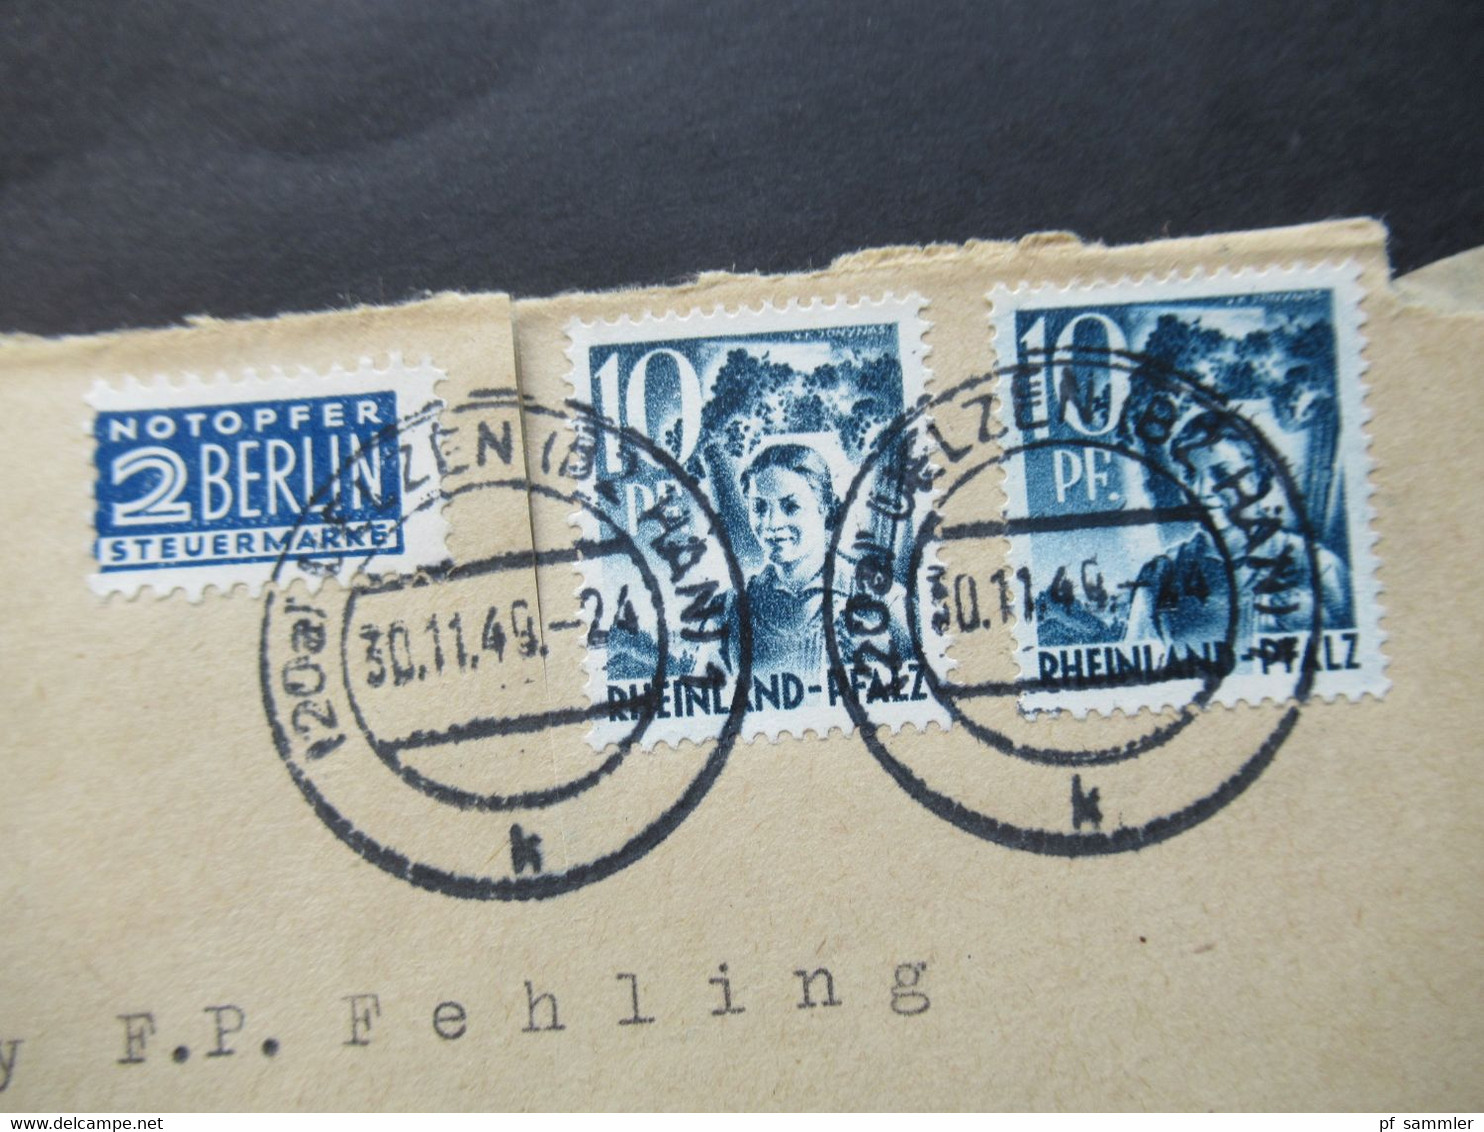 Französische Zone Rheinland Pfalz Nr.3 MeF  30.11.1949 Mit Notopfer Marke Umschlag Saatgut Heinr. Gerke Uelzen Hannover - Rheinland-Pfalz